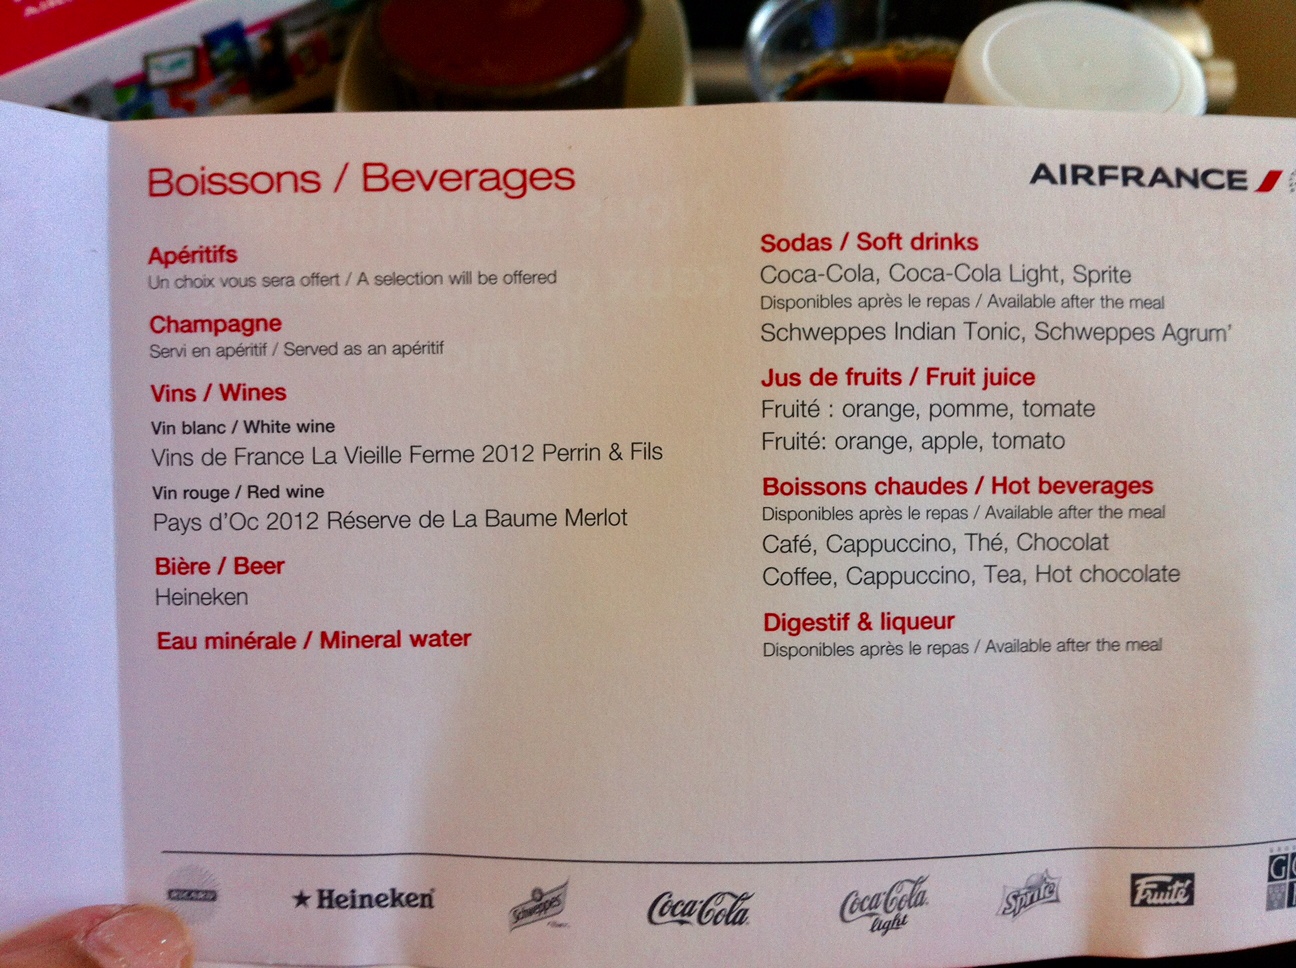 Cardápio de bebidas durante o voo com o A380 da Air France. Foto: AMF / Blog Tirando Férias